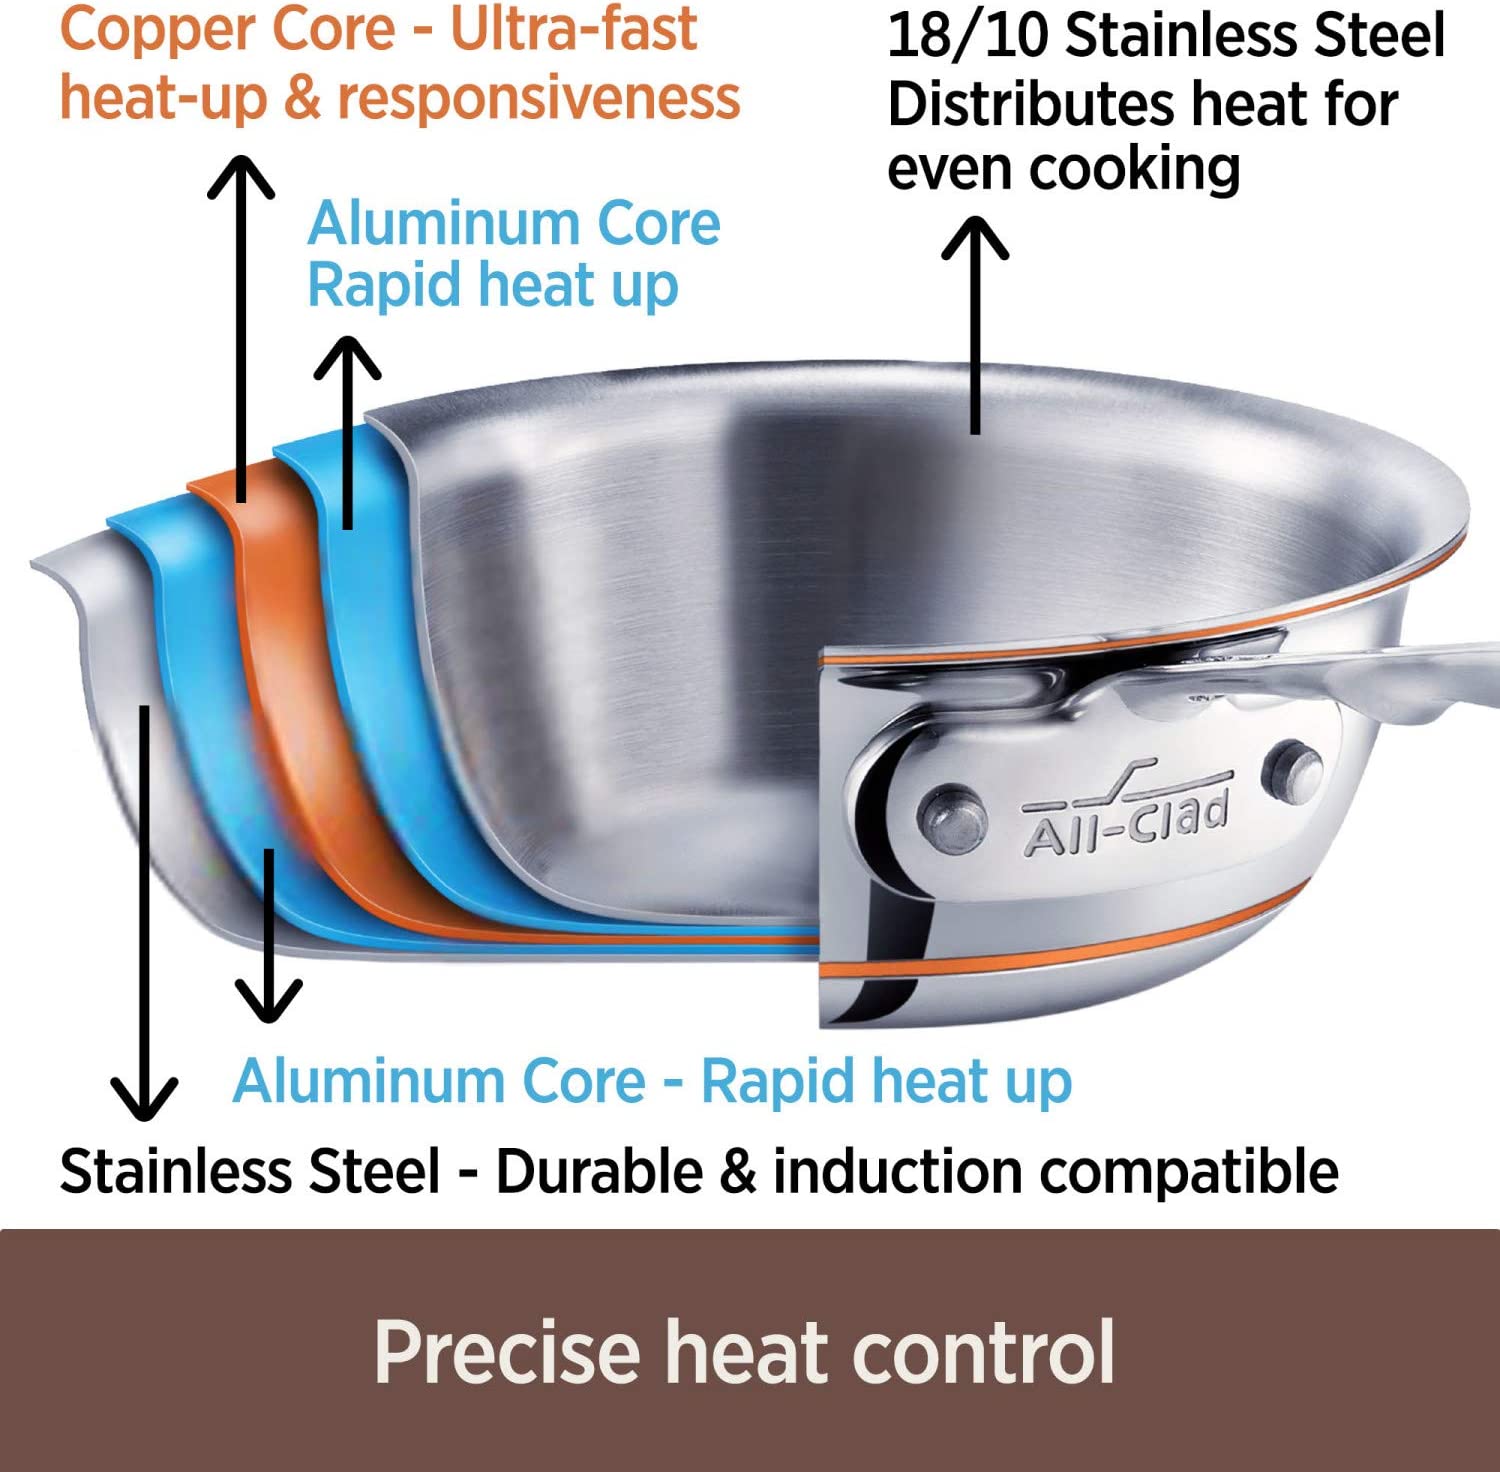 All-Clad Copper Core Saucepans